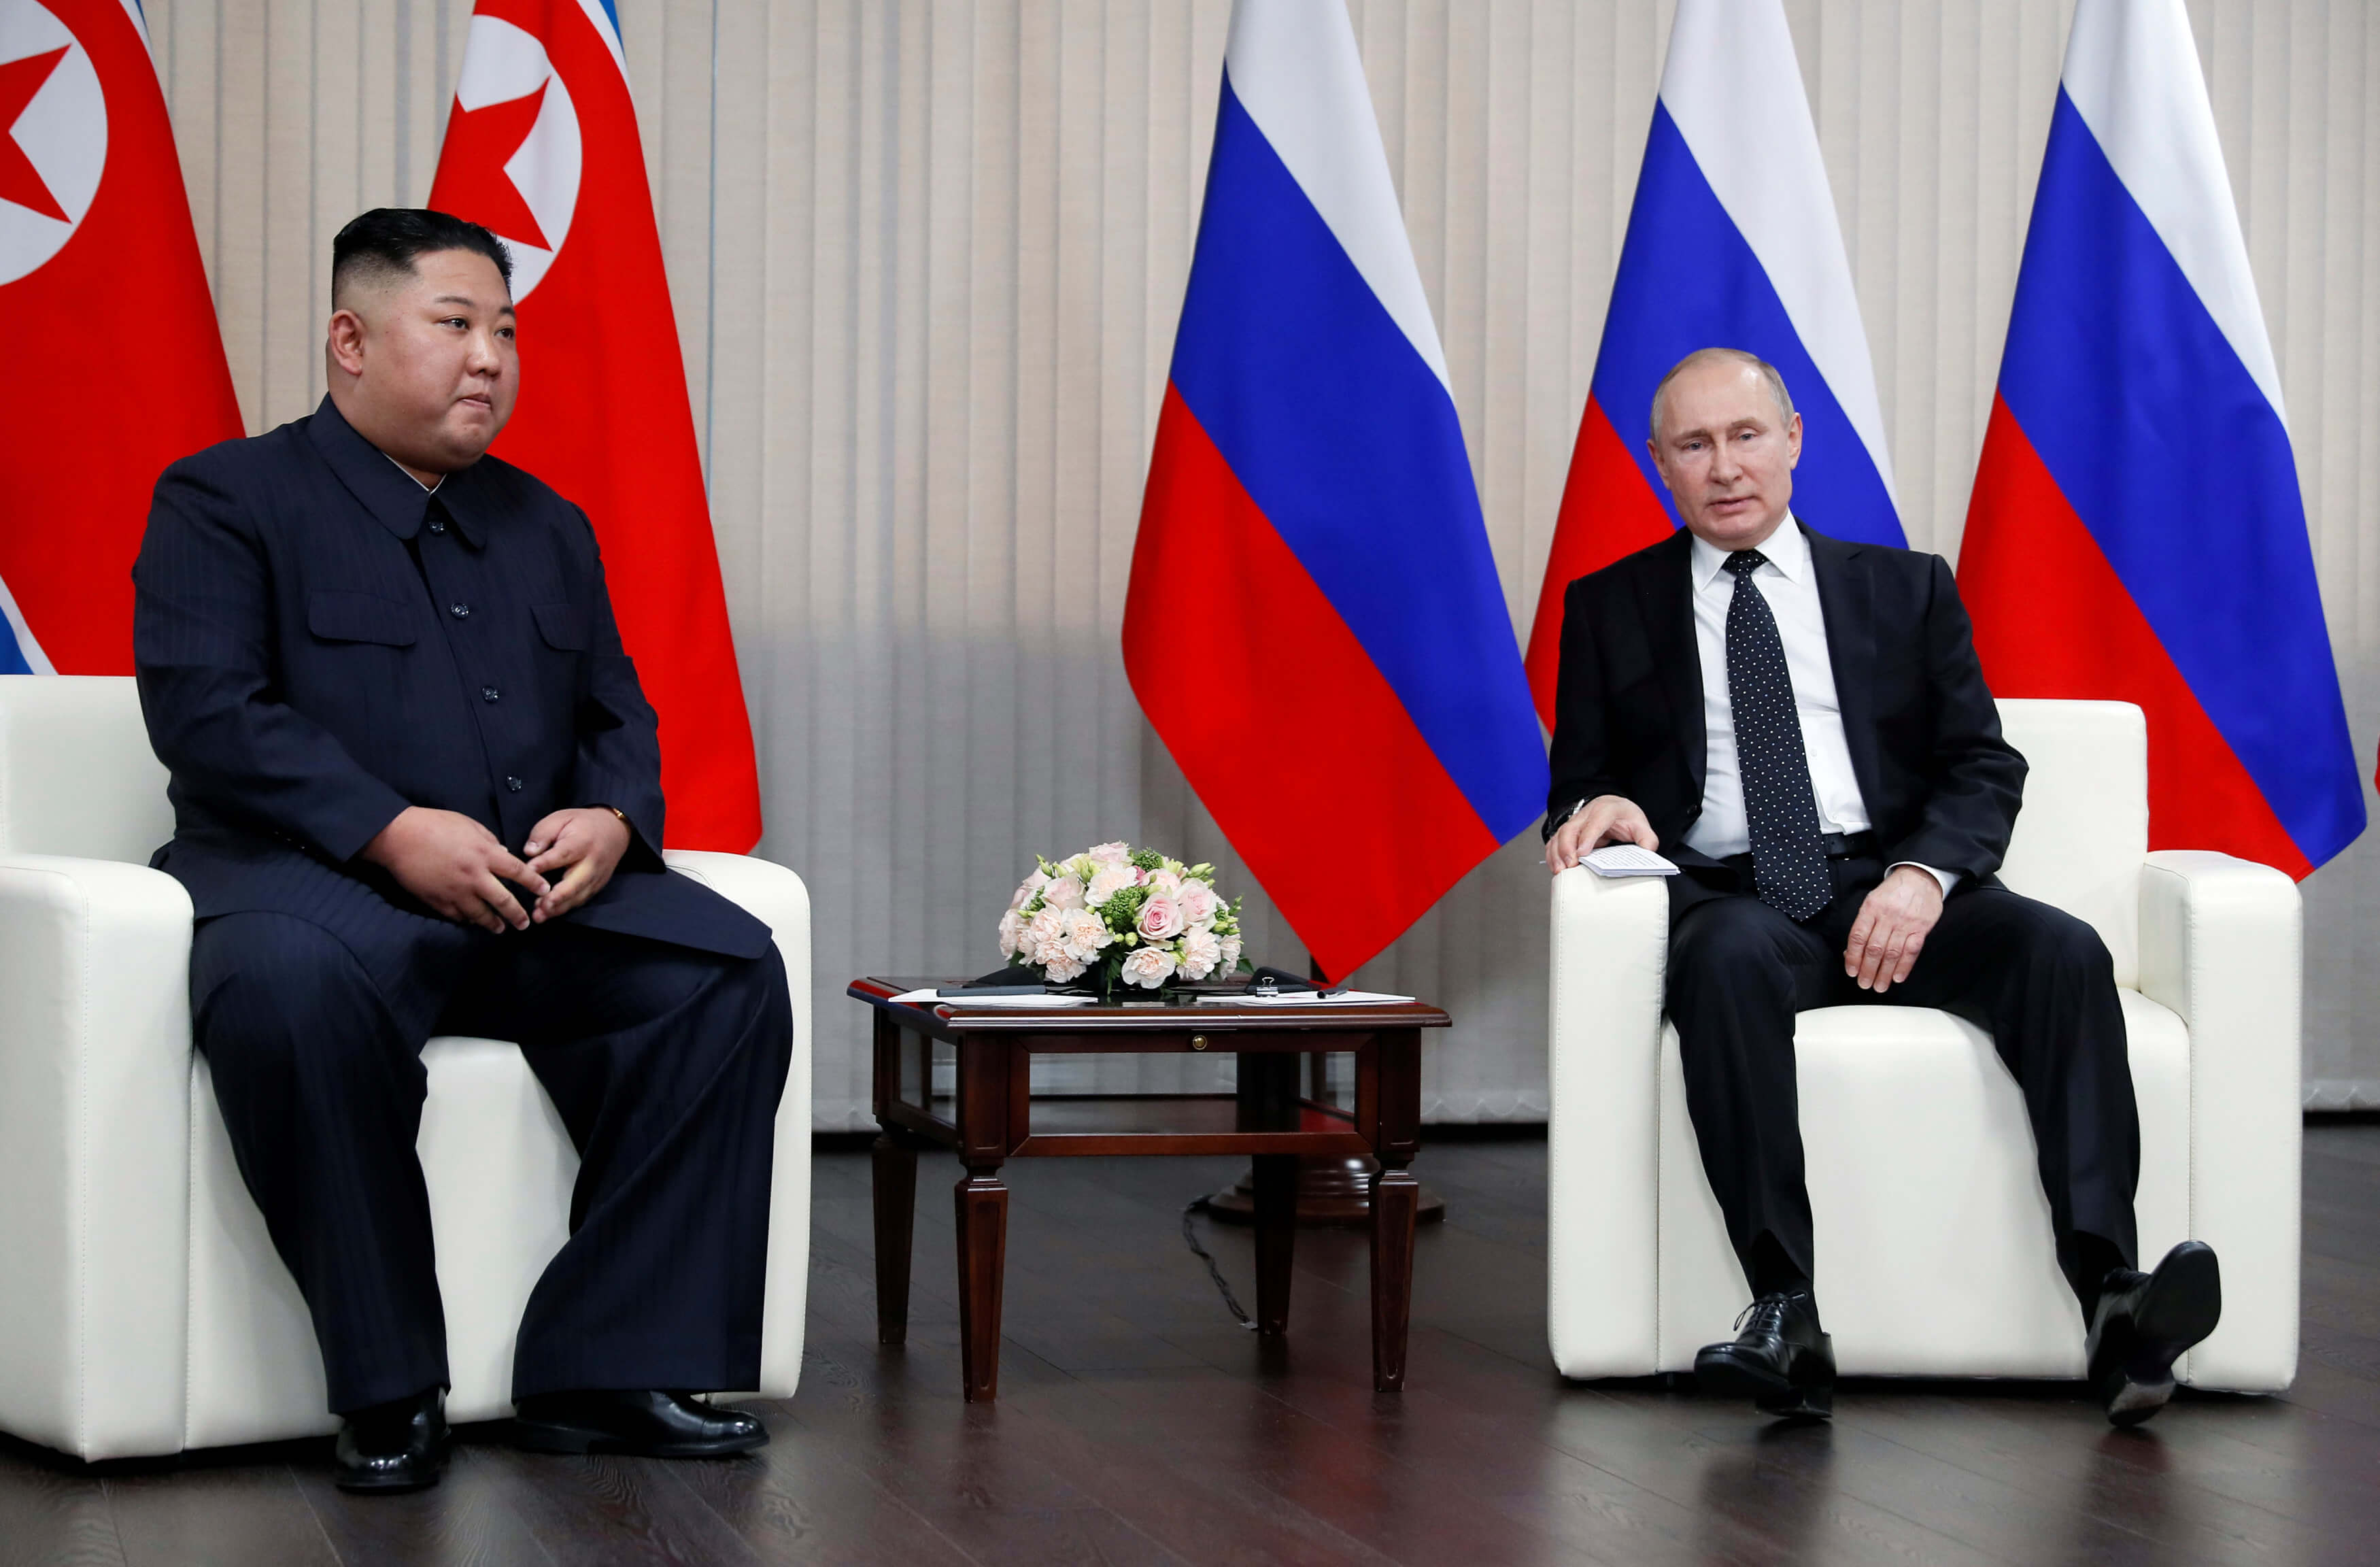 Σε καλό κλίμα η ιστορική συνάντηση Βλαντιμίρ Πούτιν – Κιμ Γιονγκ Ουν [pics]